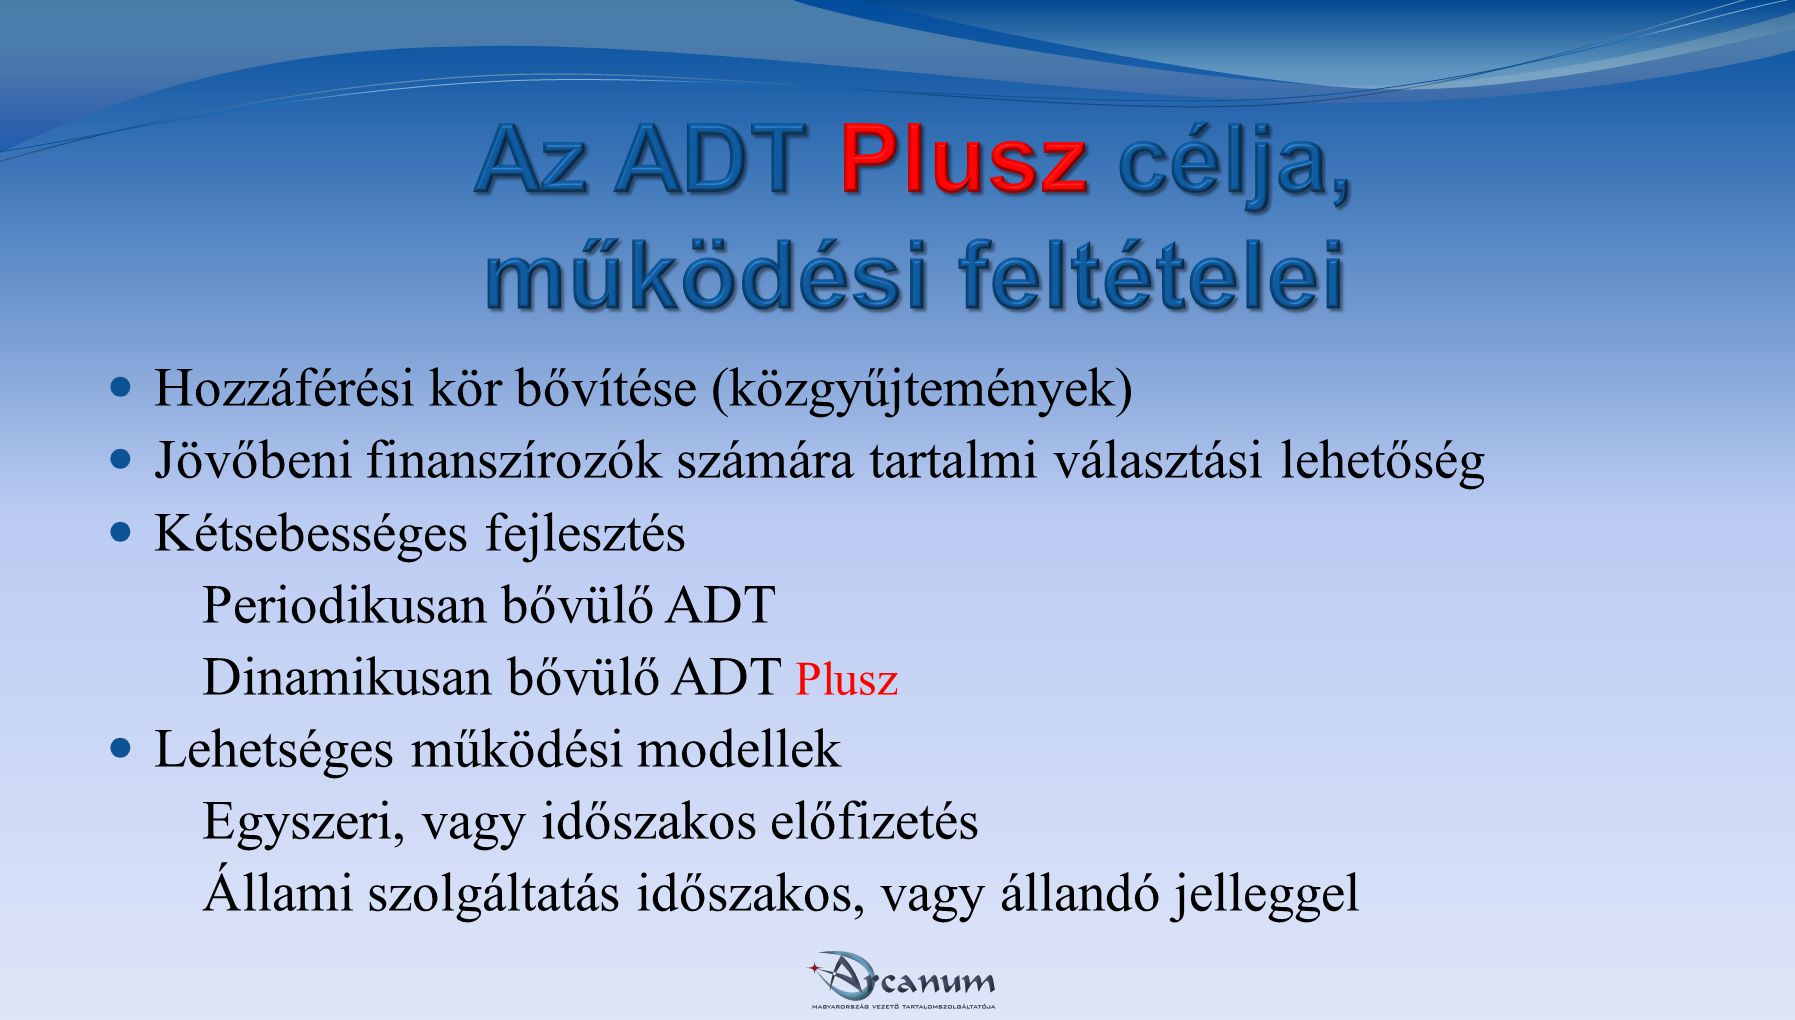 Az ADT Plusz célja, működési feltételei